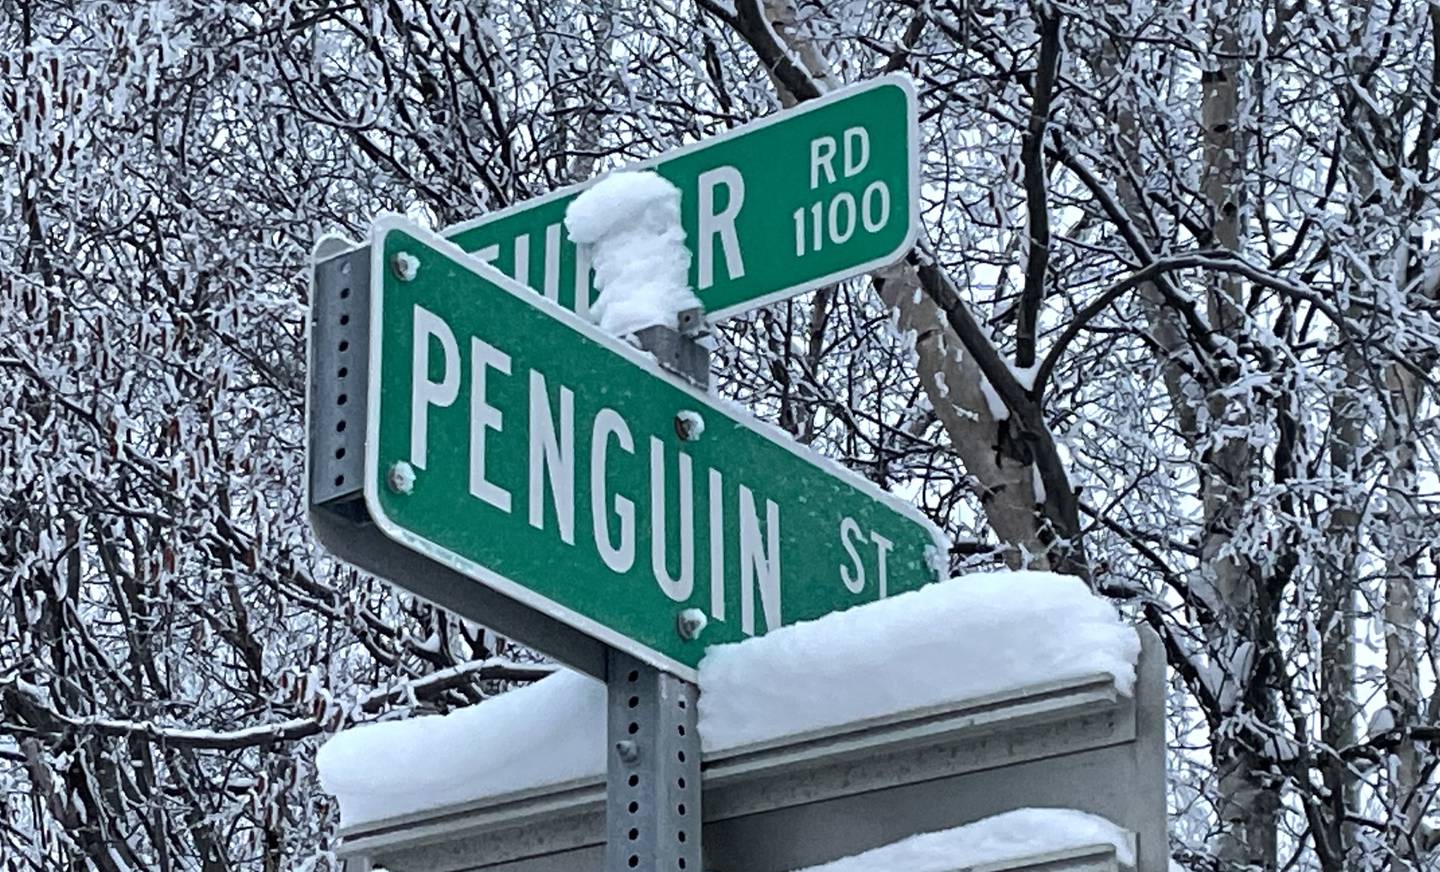 Penguin Street